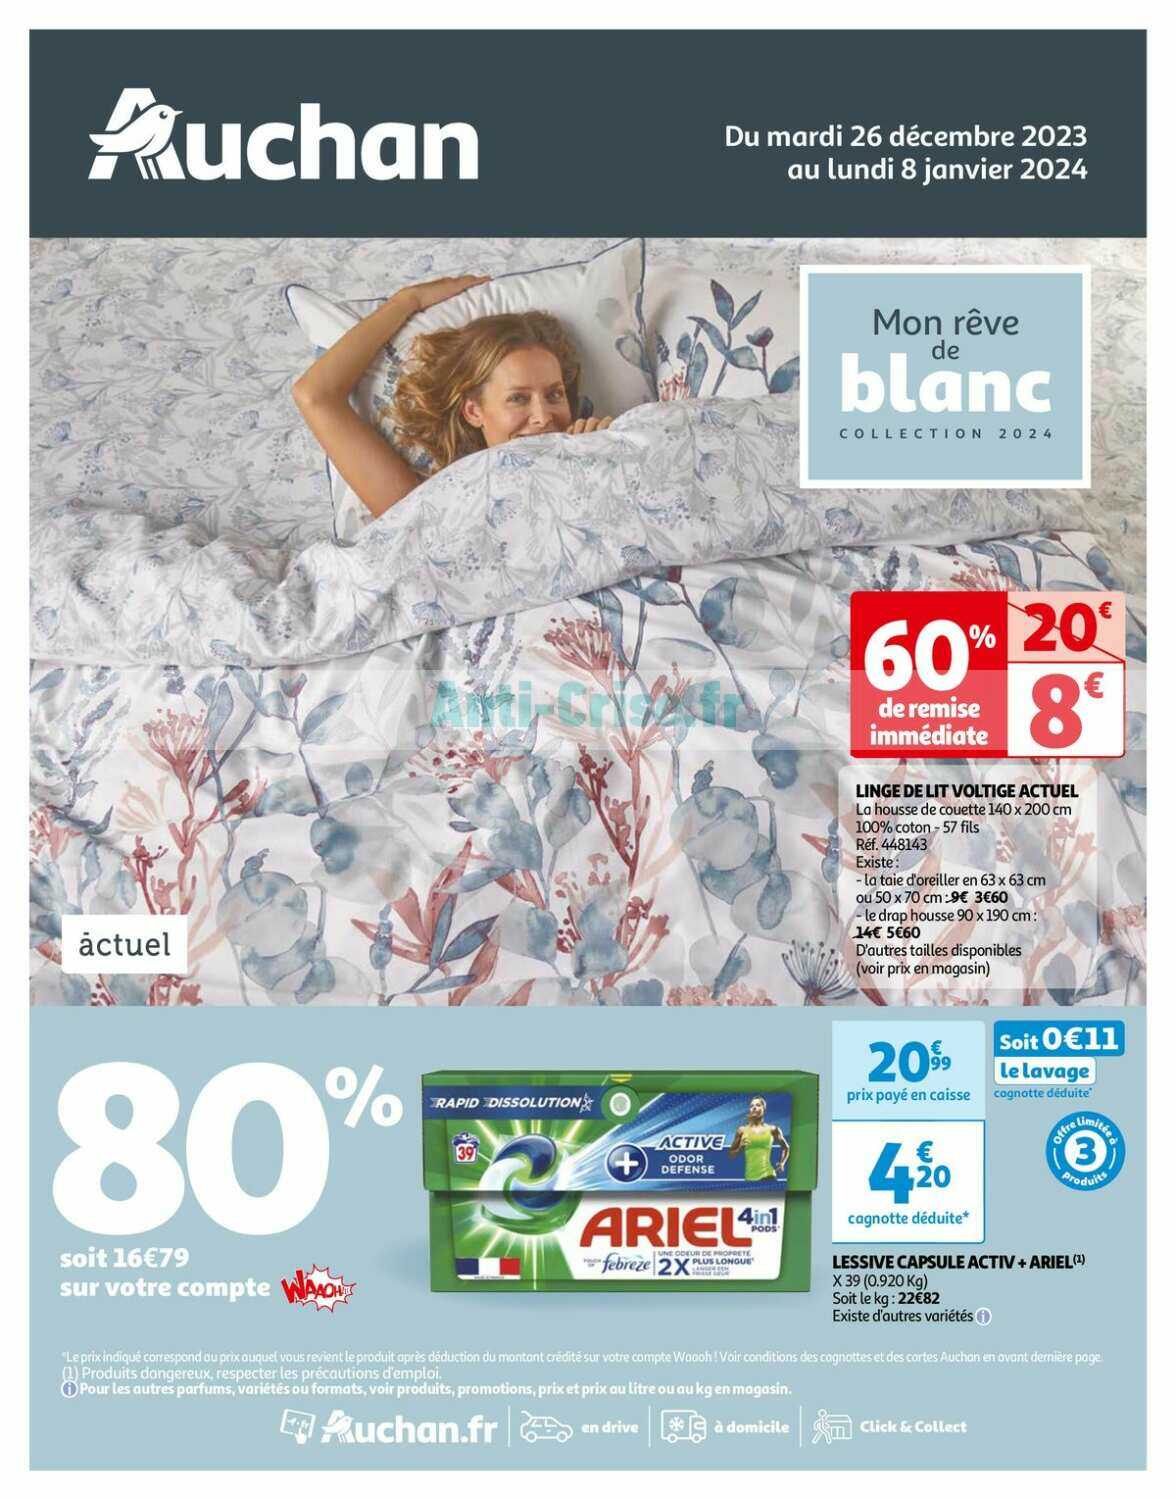 Promo Lessive Poudre Ariel chez Auchan